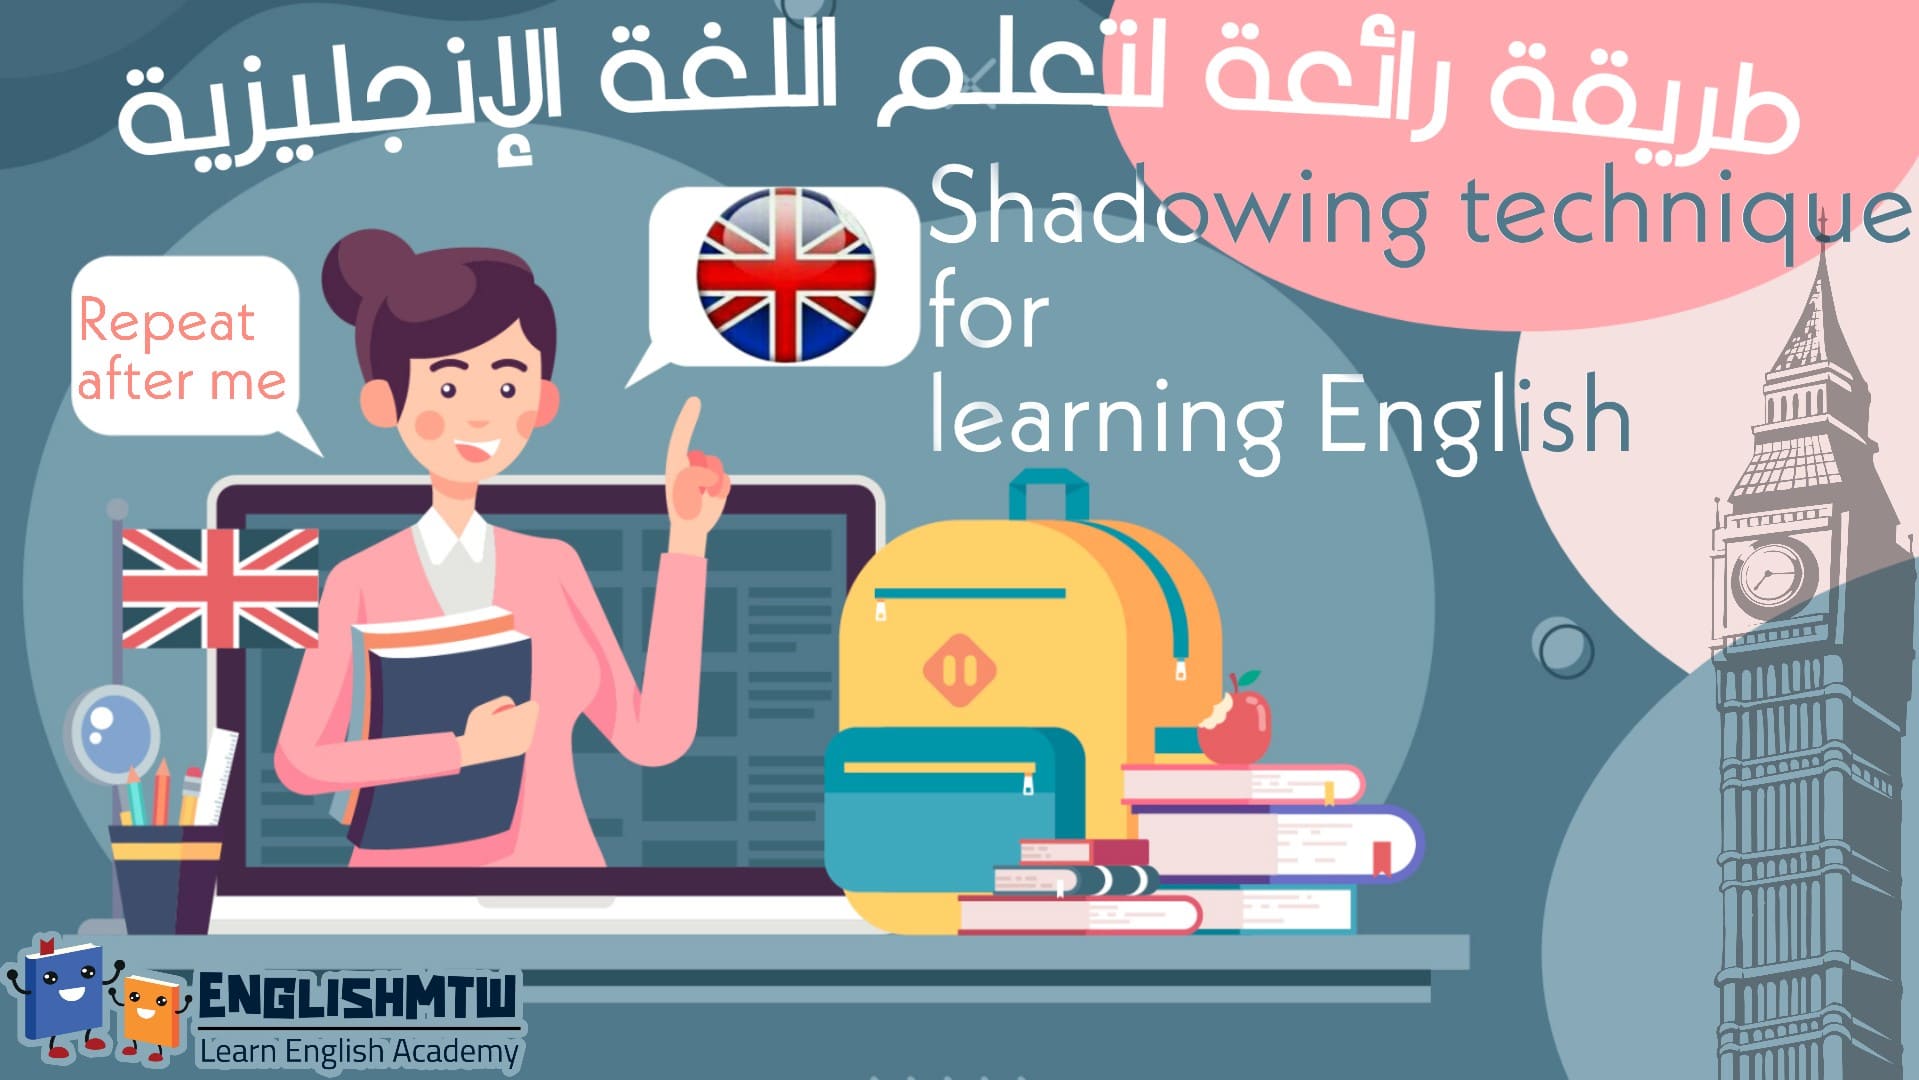 استخدام Shadowing في تعلم اللغة الانجليزية للوصول إلى التحدث بطلاقة